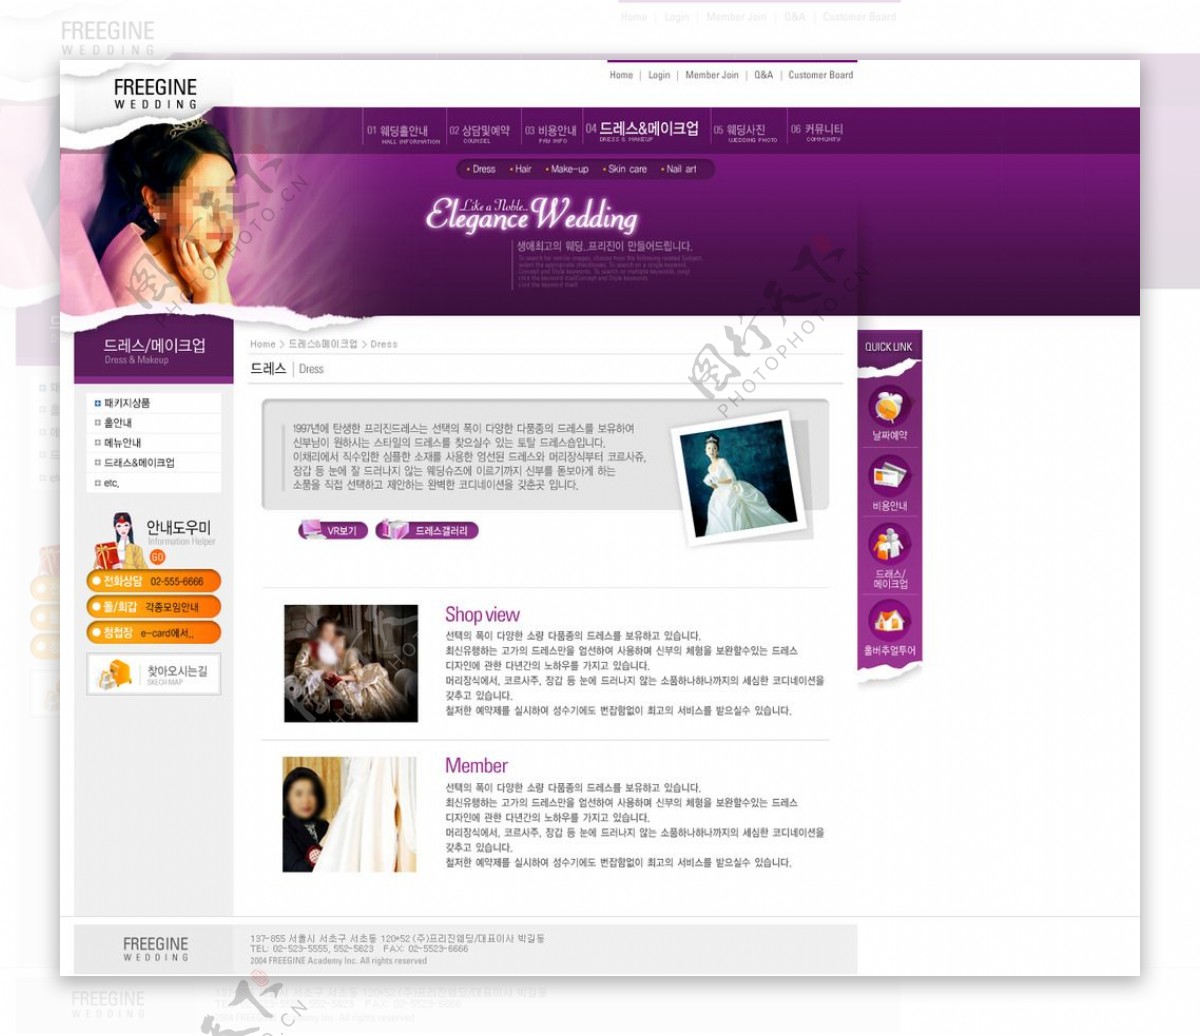 婚礼服务网站UI界面设计